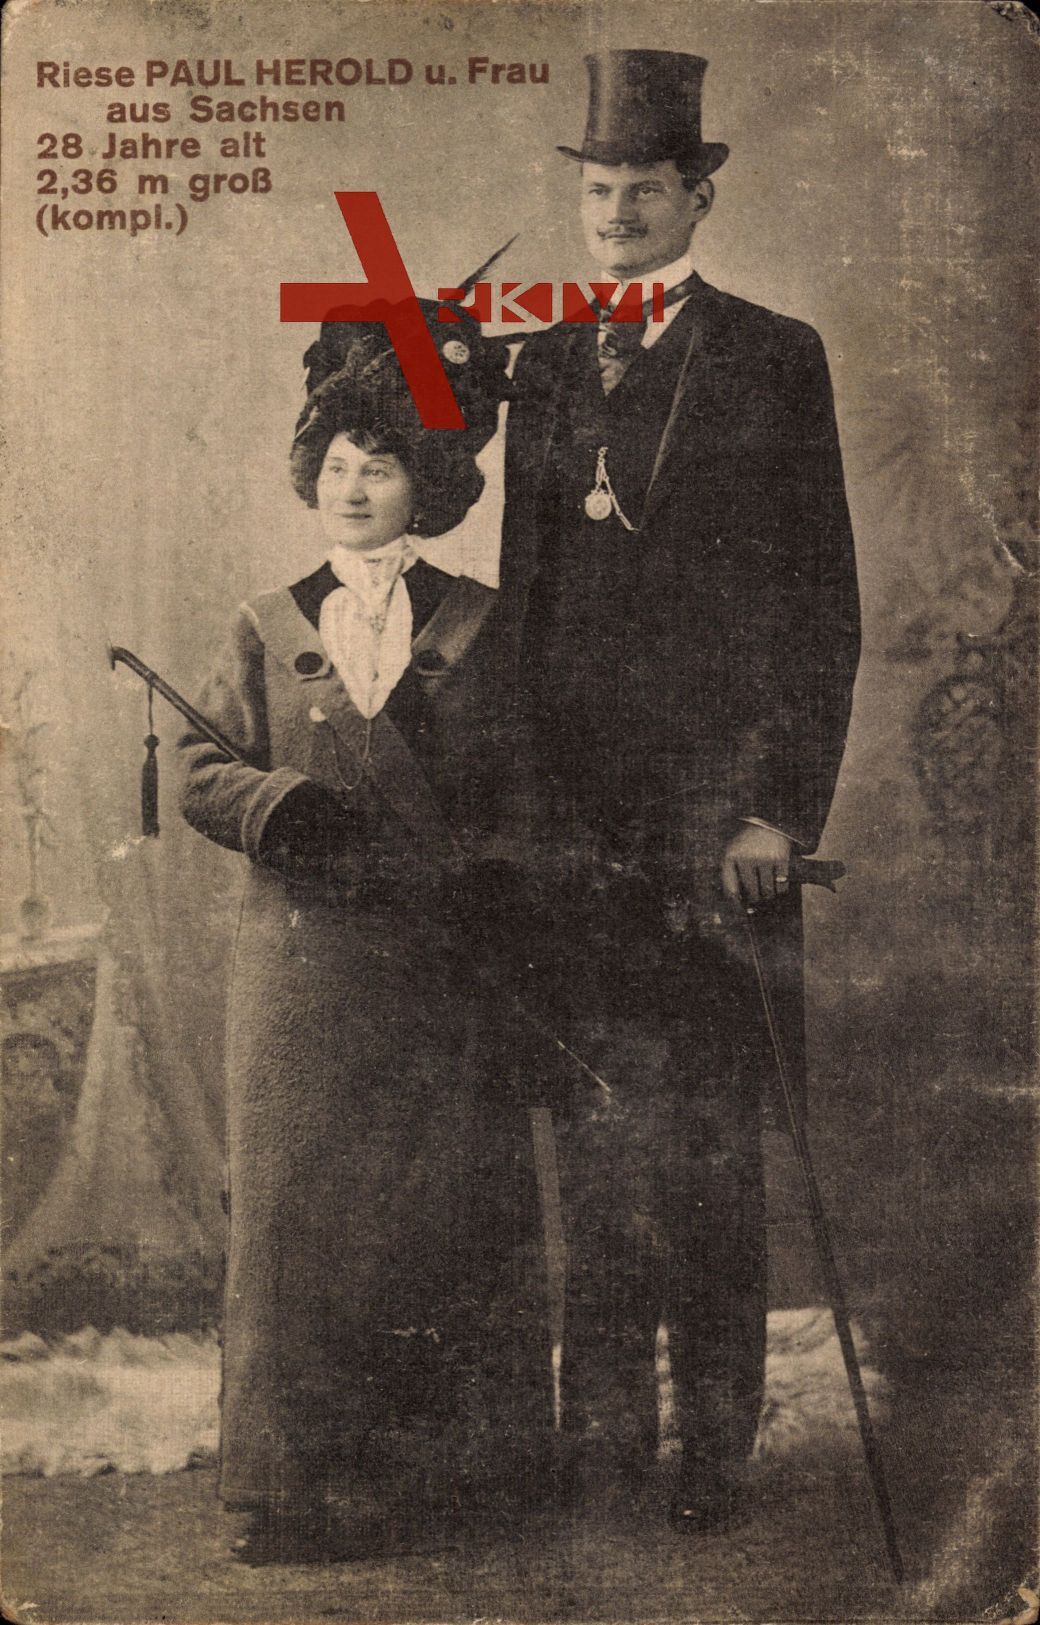 Riese Paul Herold und Frau aus Sachsen, 28 Jahre alt, 2,36m groß